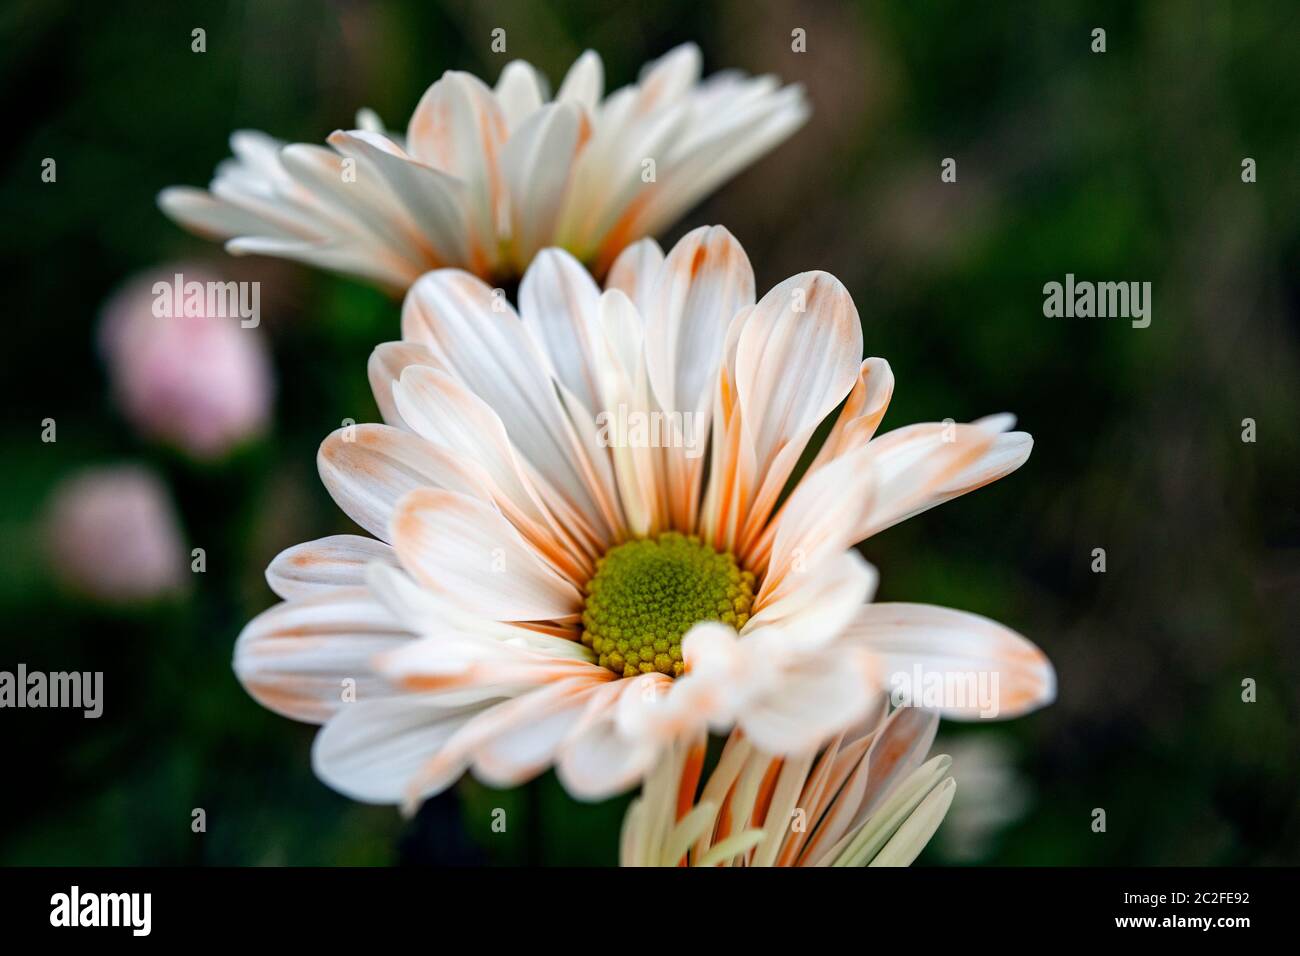 LB00184-00...WASHINGTON - Lensbaby immagine di fiori margherita. Foto Stock